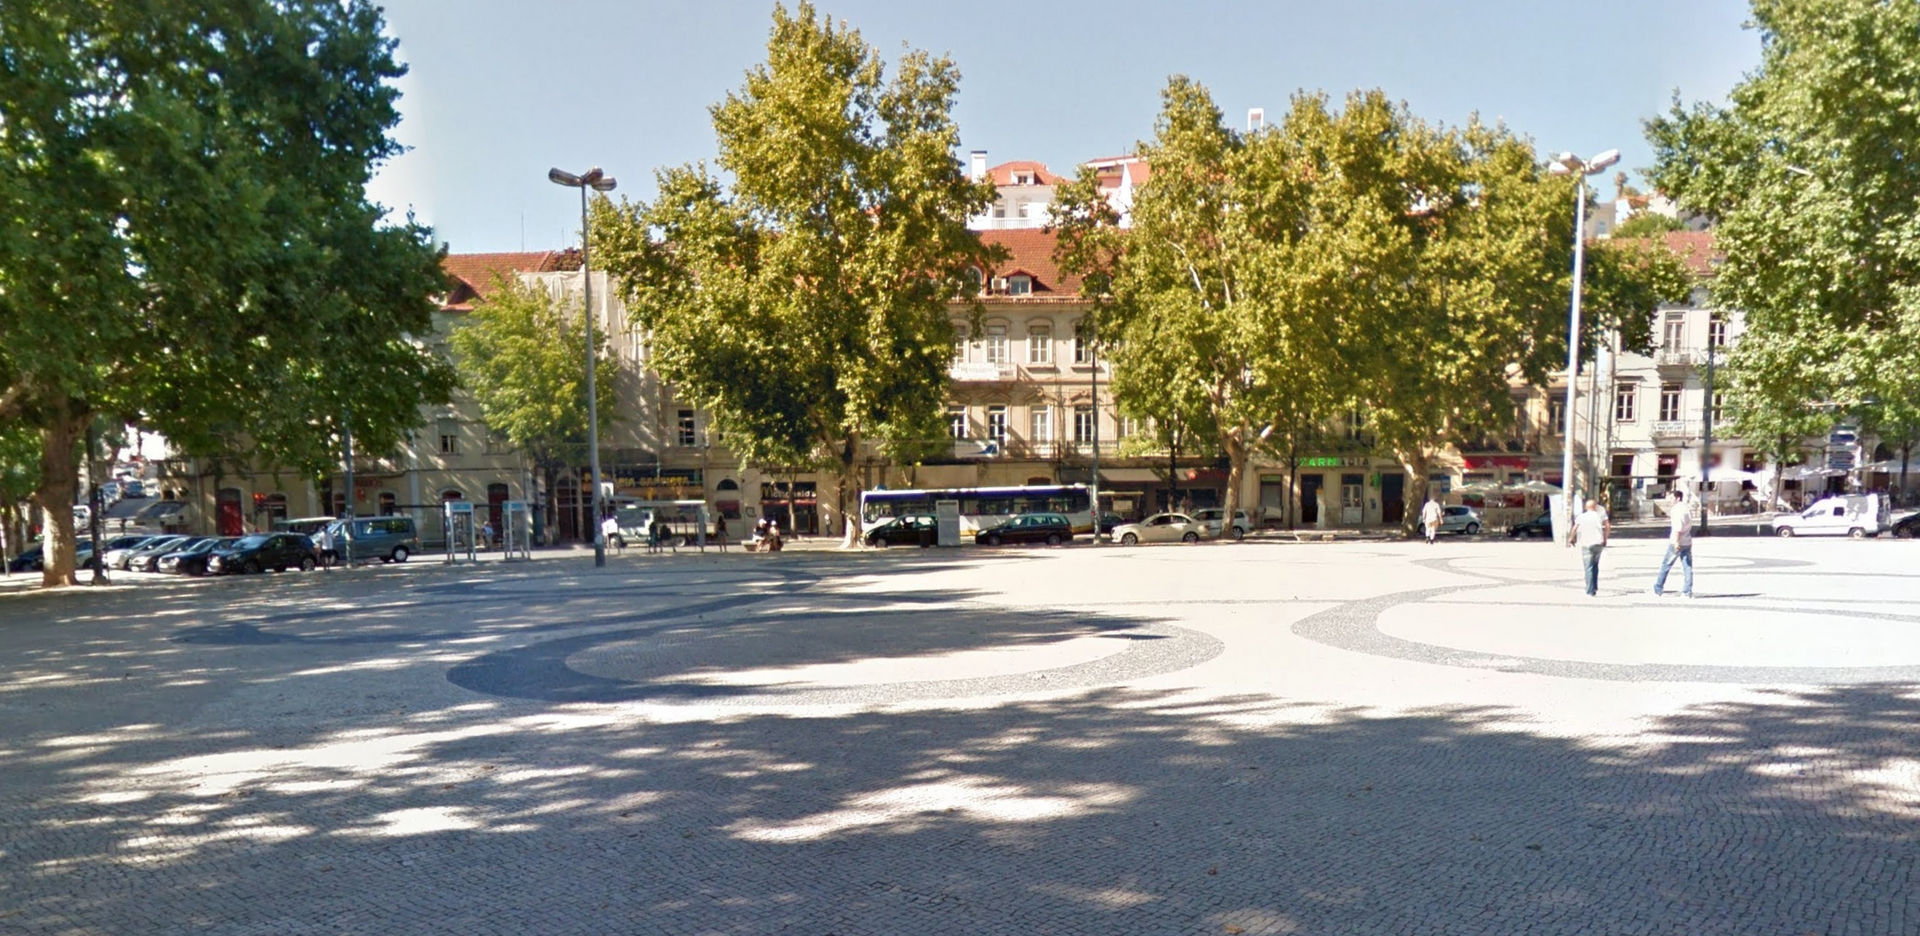 Praça da República by Google Earth